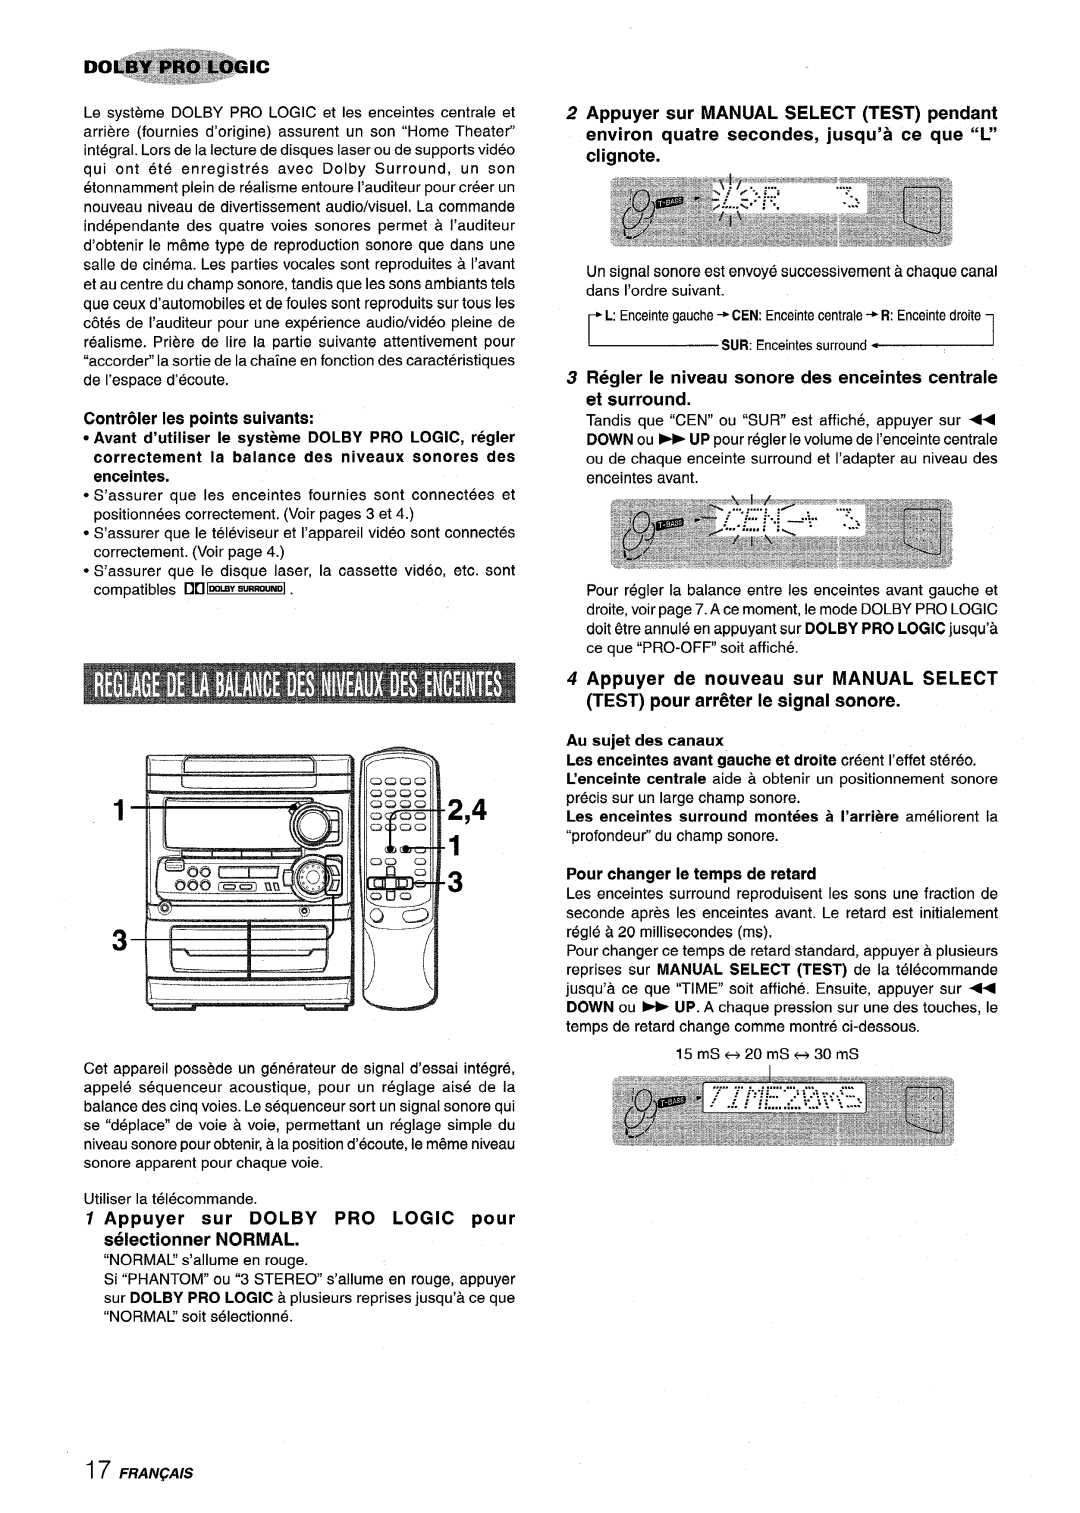 Sony NSX-MT320 ContriNer Ies points suivants, Appuyer sur DOLBY PRO LOGIC pour selectionner NORMAL, Au sujet des canaux 